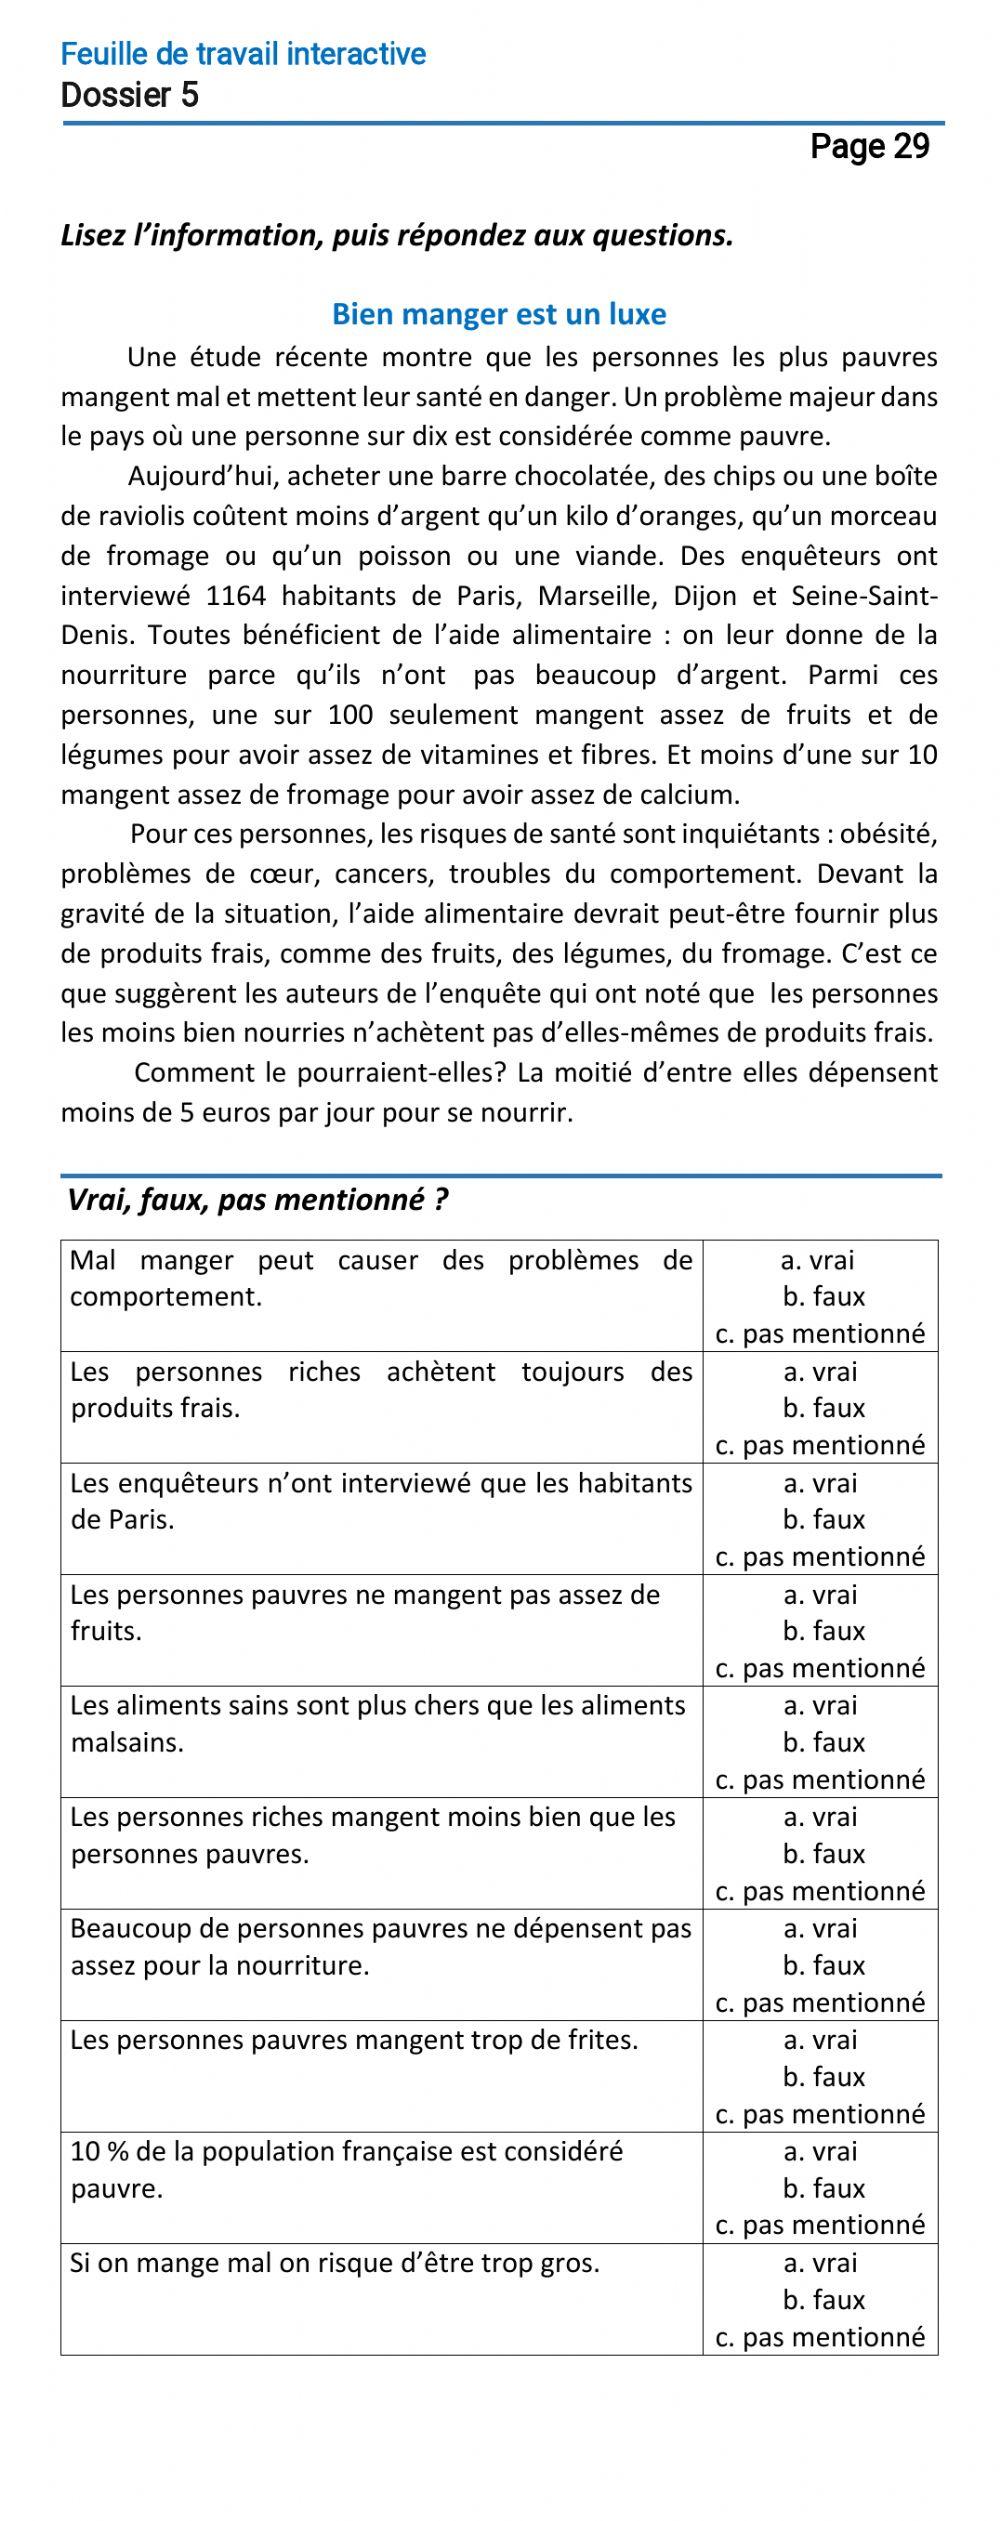 Le français-9 (повыш.)-Dossier 5-Page 29